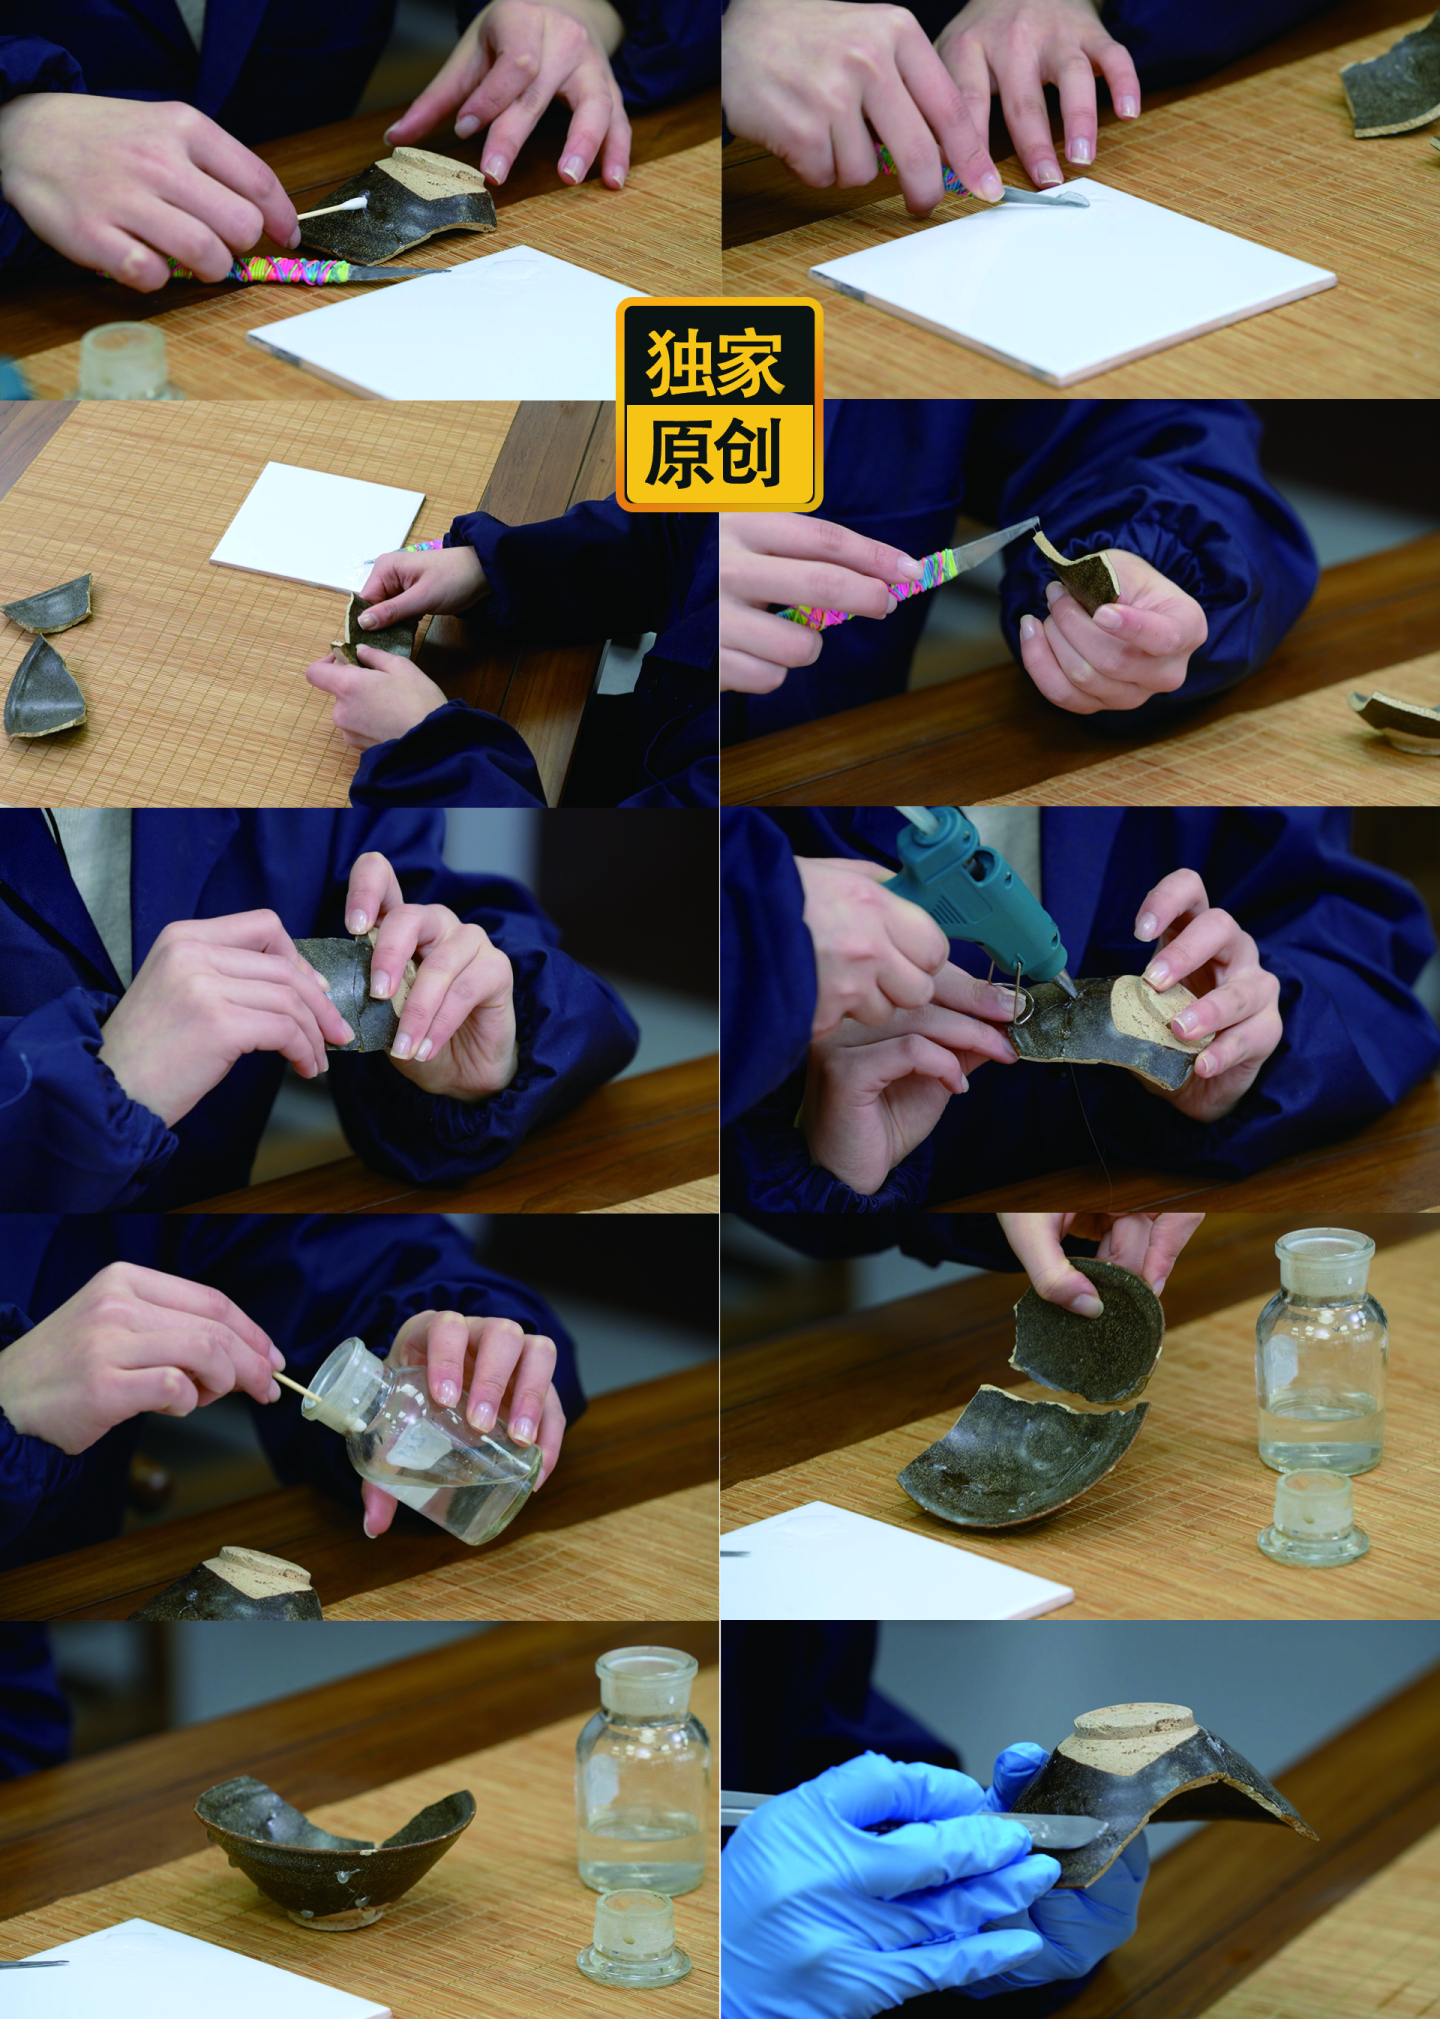 古陶瓷器的粘接拼接操作过程